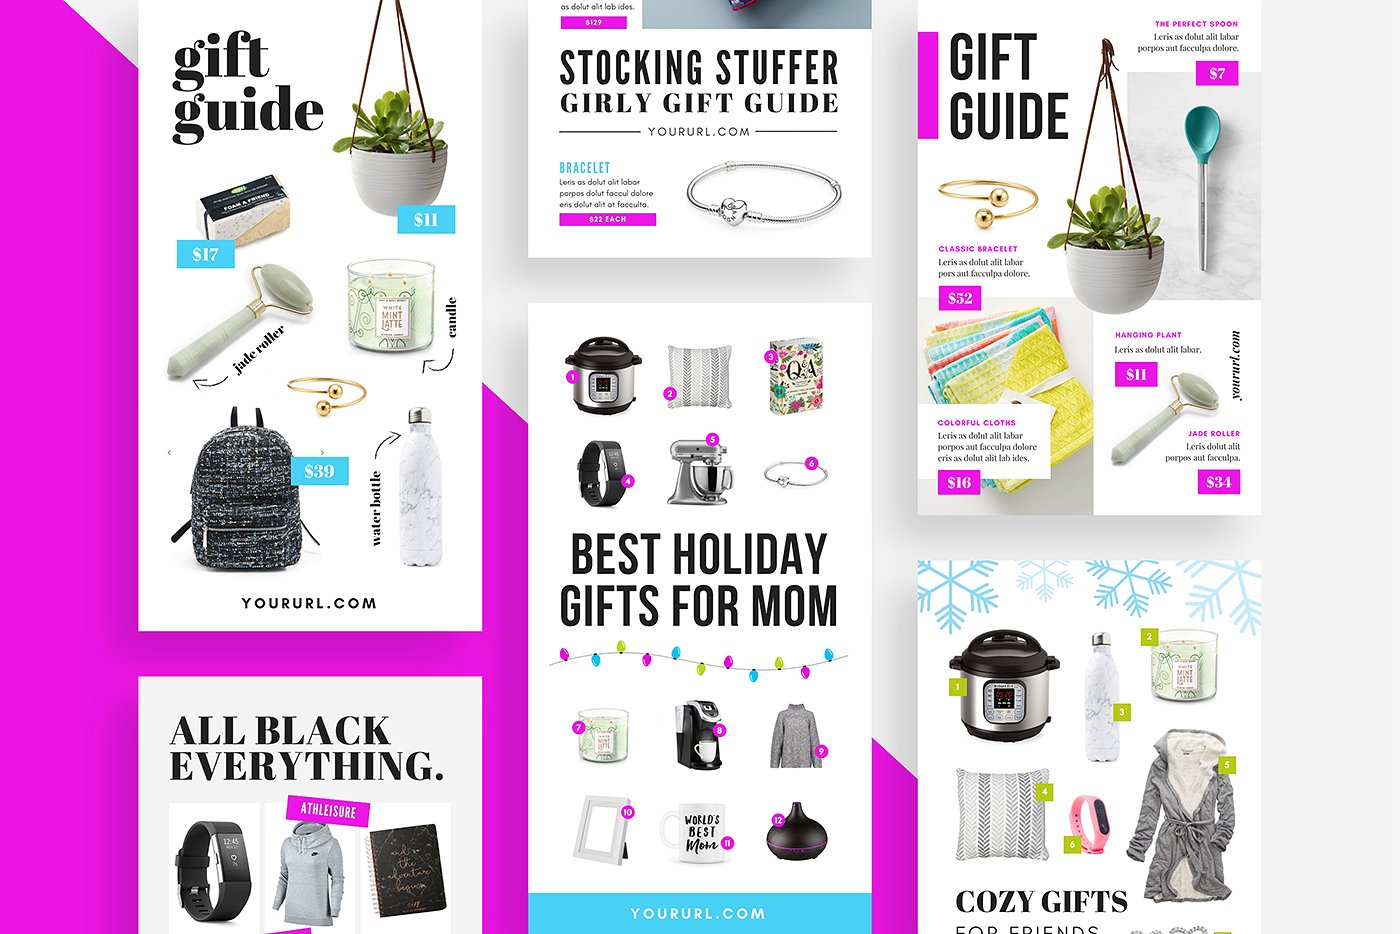 礼品指南社交媒体模板非凡图库精选 Gift Guide Pinterest Templates [psd]插图(3)